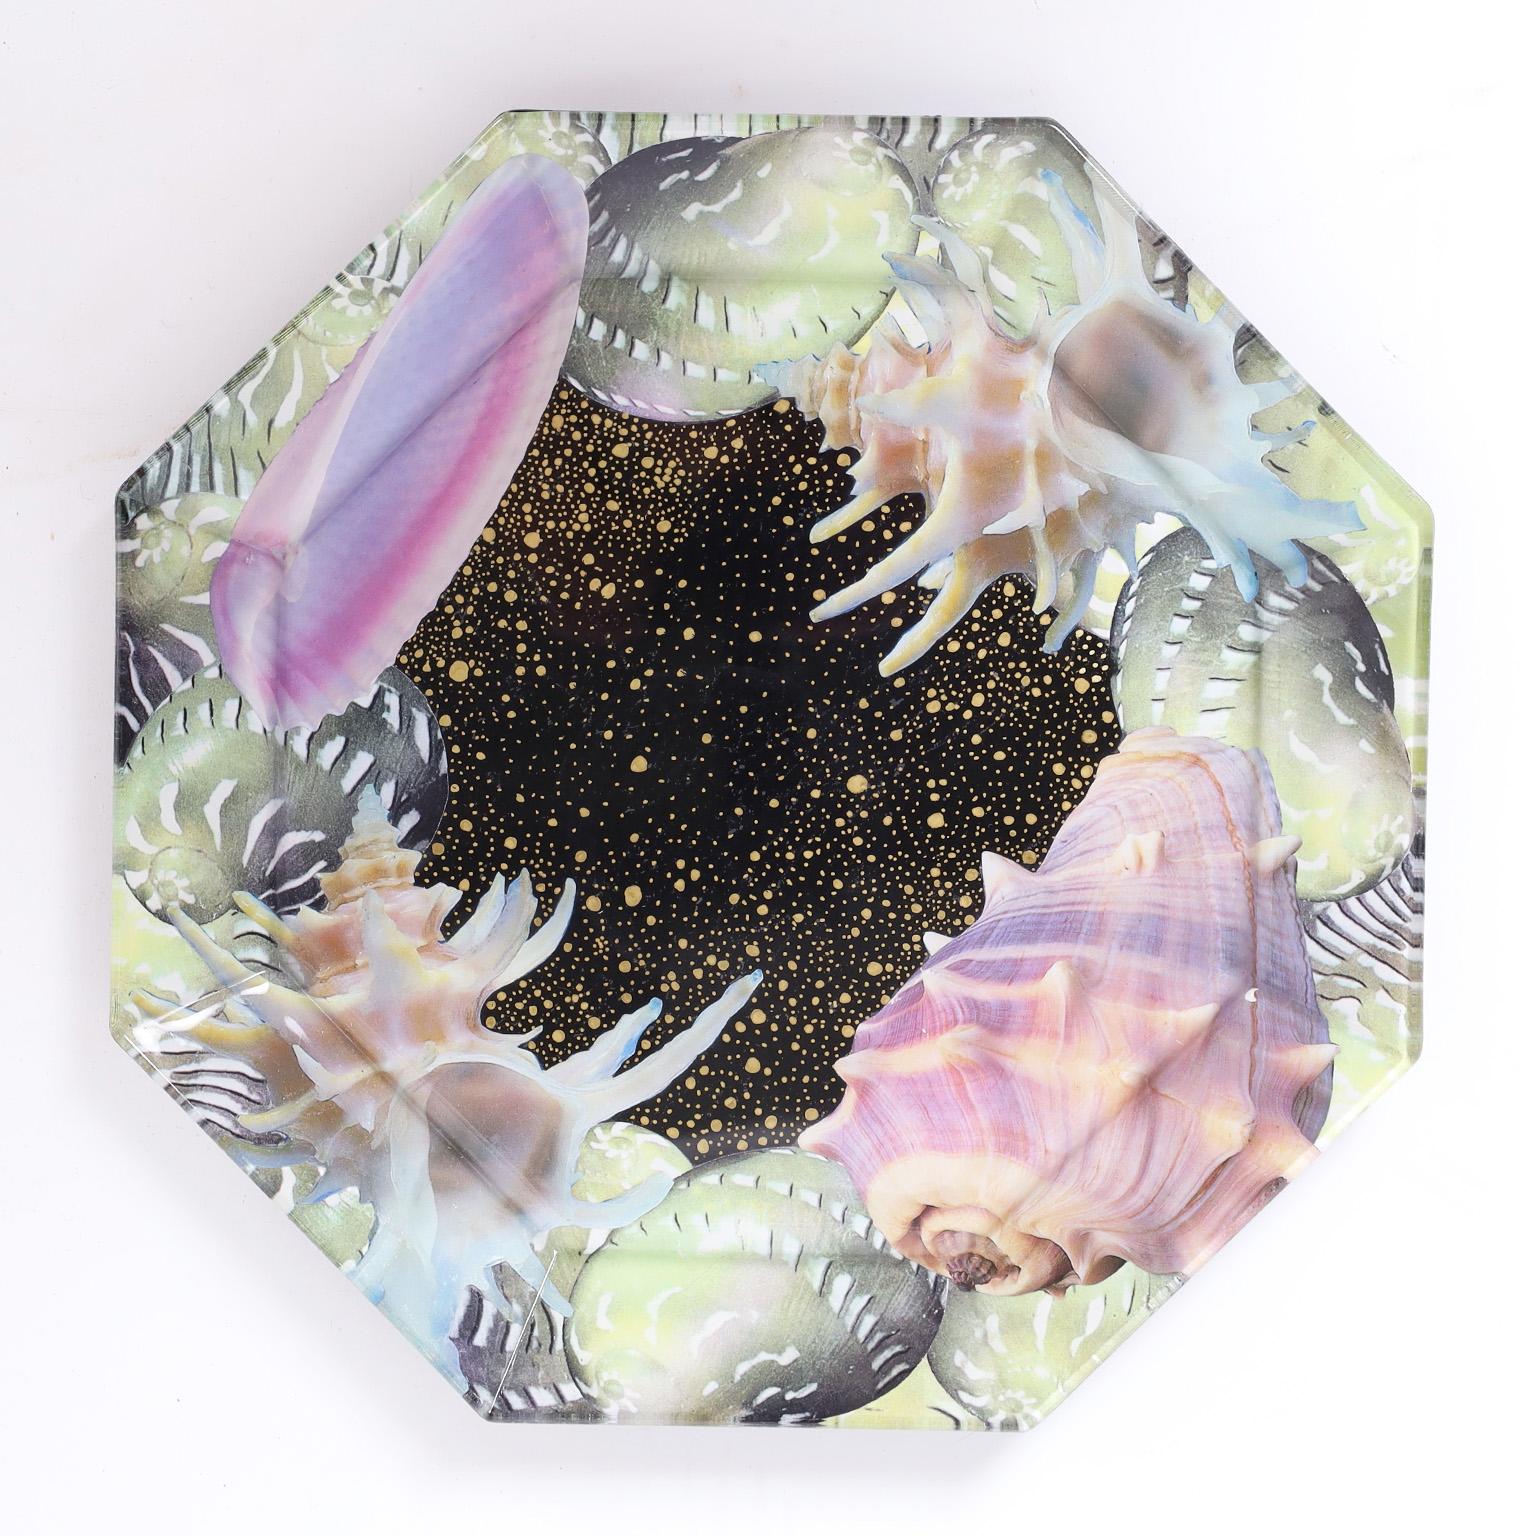 Remarquable ensemble de six assiettes en verre de forme octogonale décorées de coquillages selon une technique fantaisiste de découpage inversé. Signé Pablo Manzoni sur les fonds.